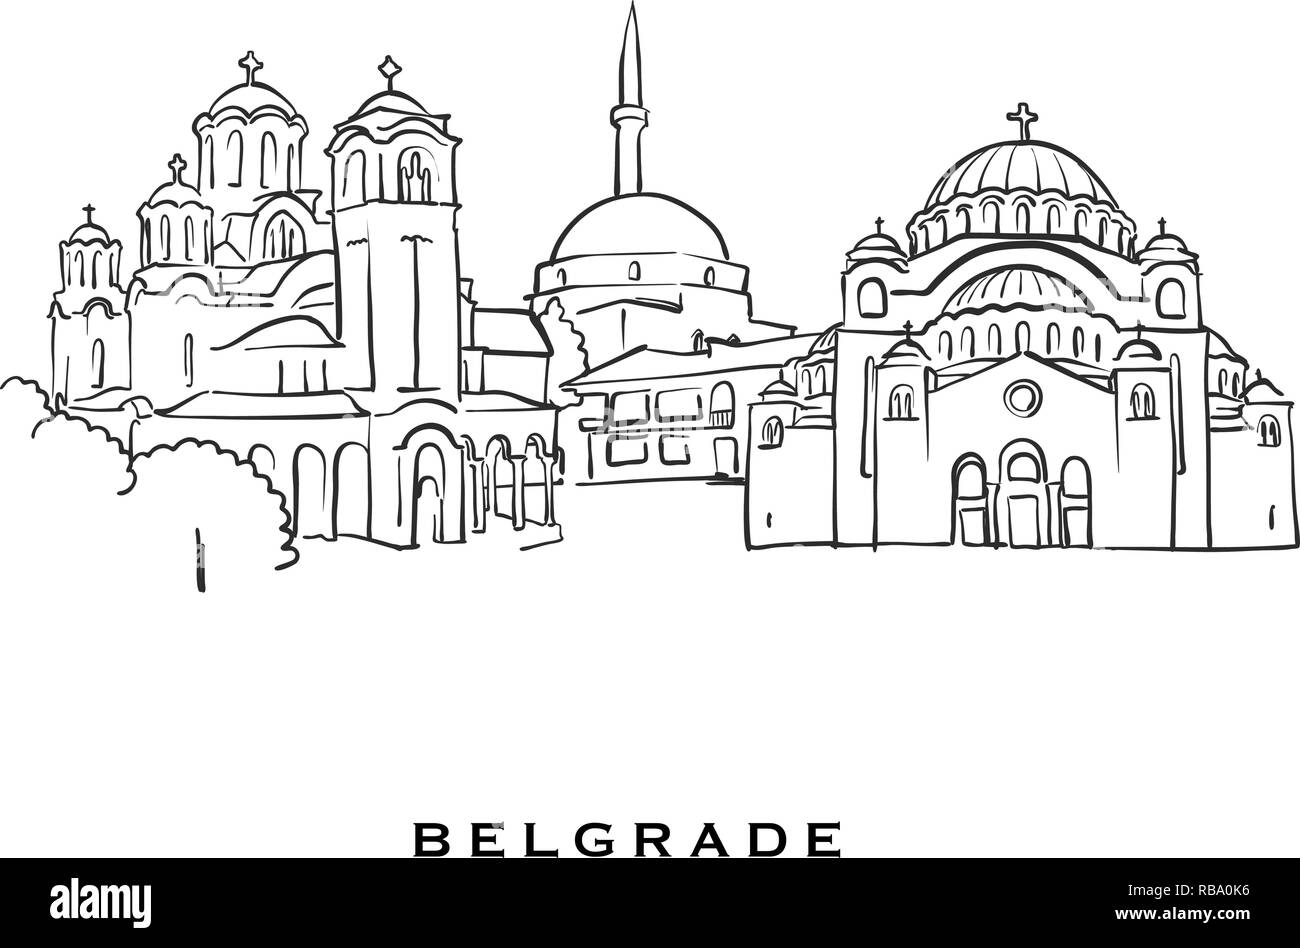 Belgrade Serbia famosa architettura. Delineato lo schizzo di vettore separato su sfondo bianco. Disegni di architettura di tutte le capitali europee. Illustrazione Vettoriale